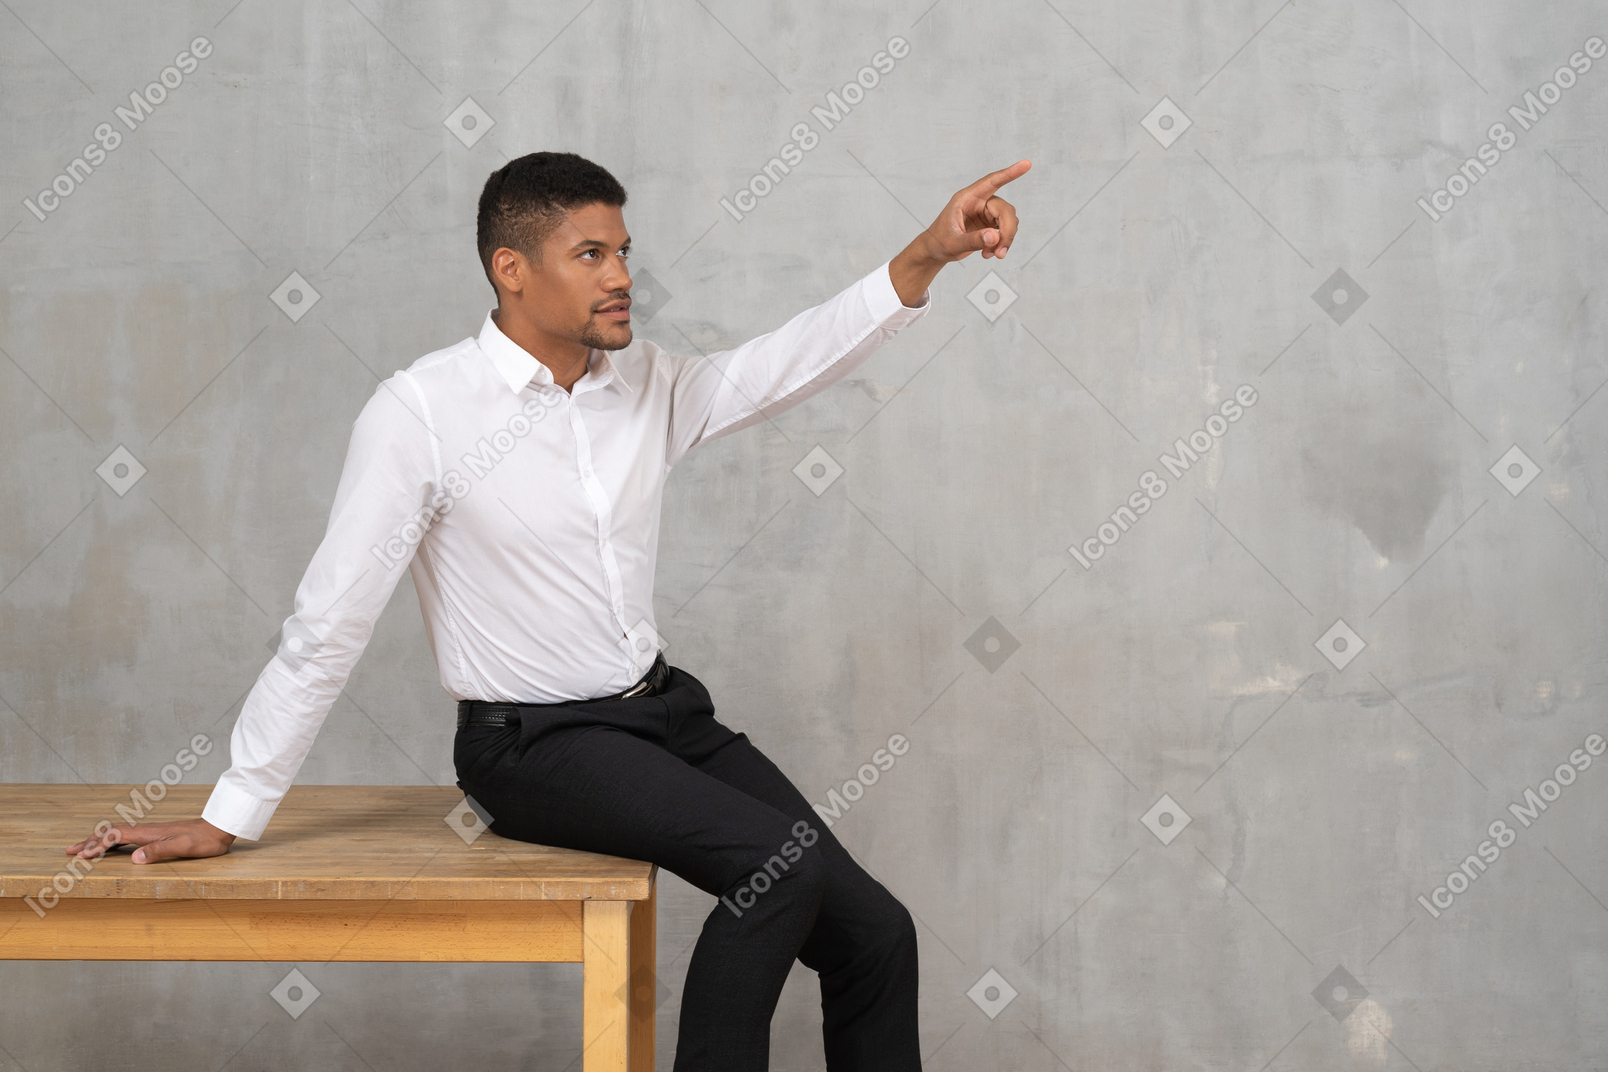 Mann sitzt auf einem tisch und zeigt nach oben